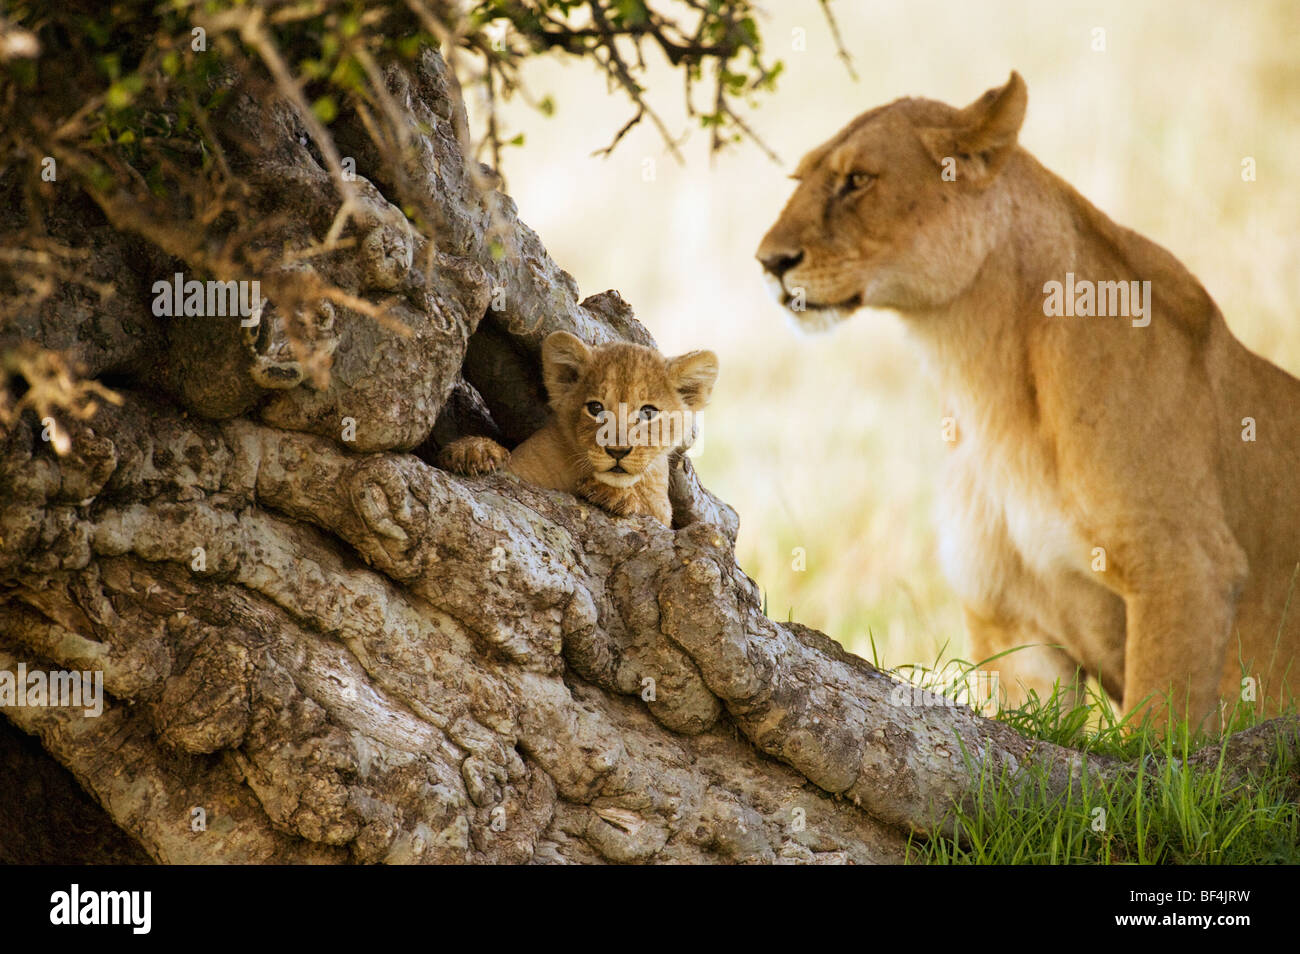 Lindo cachorro de león en el árbol vertical Foto de stock